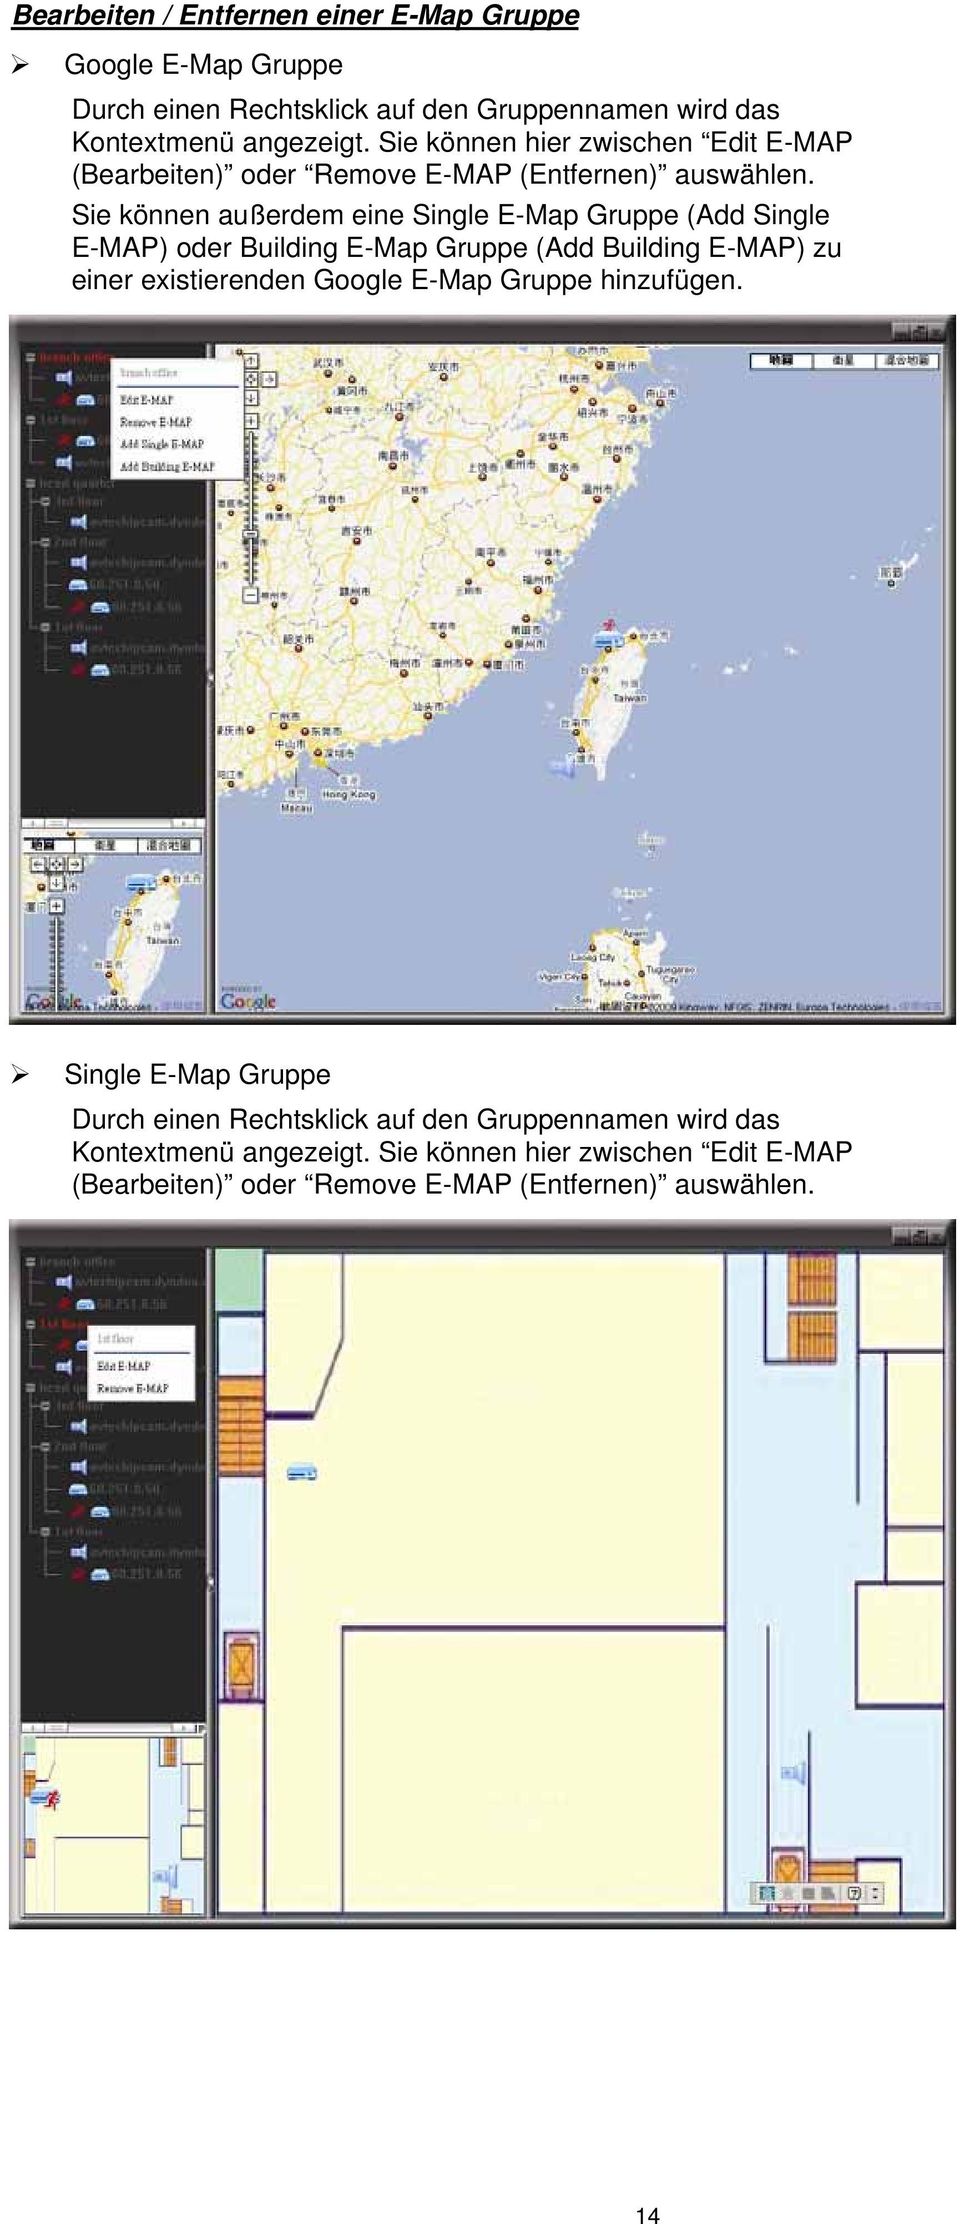 Sie können außerdem eine Single E-Map Gruppe (Add Single E-MAP) oder Building E-Map Gruppe (Add Building E-MAP) zu einer existierenden Google